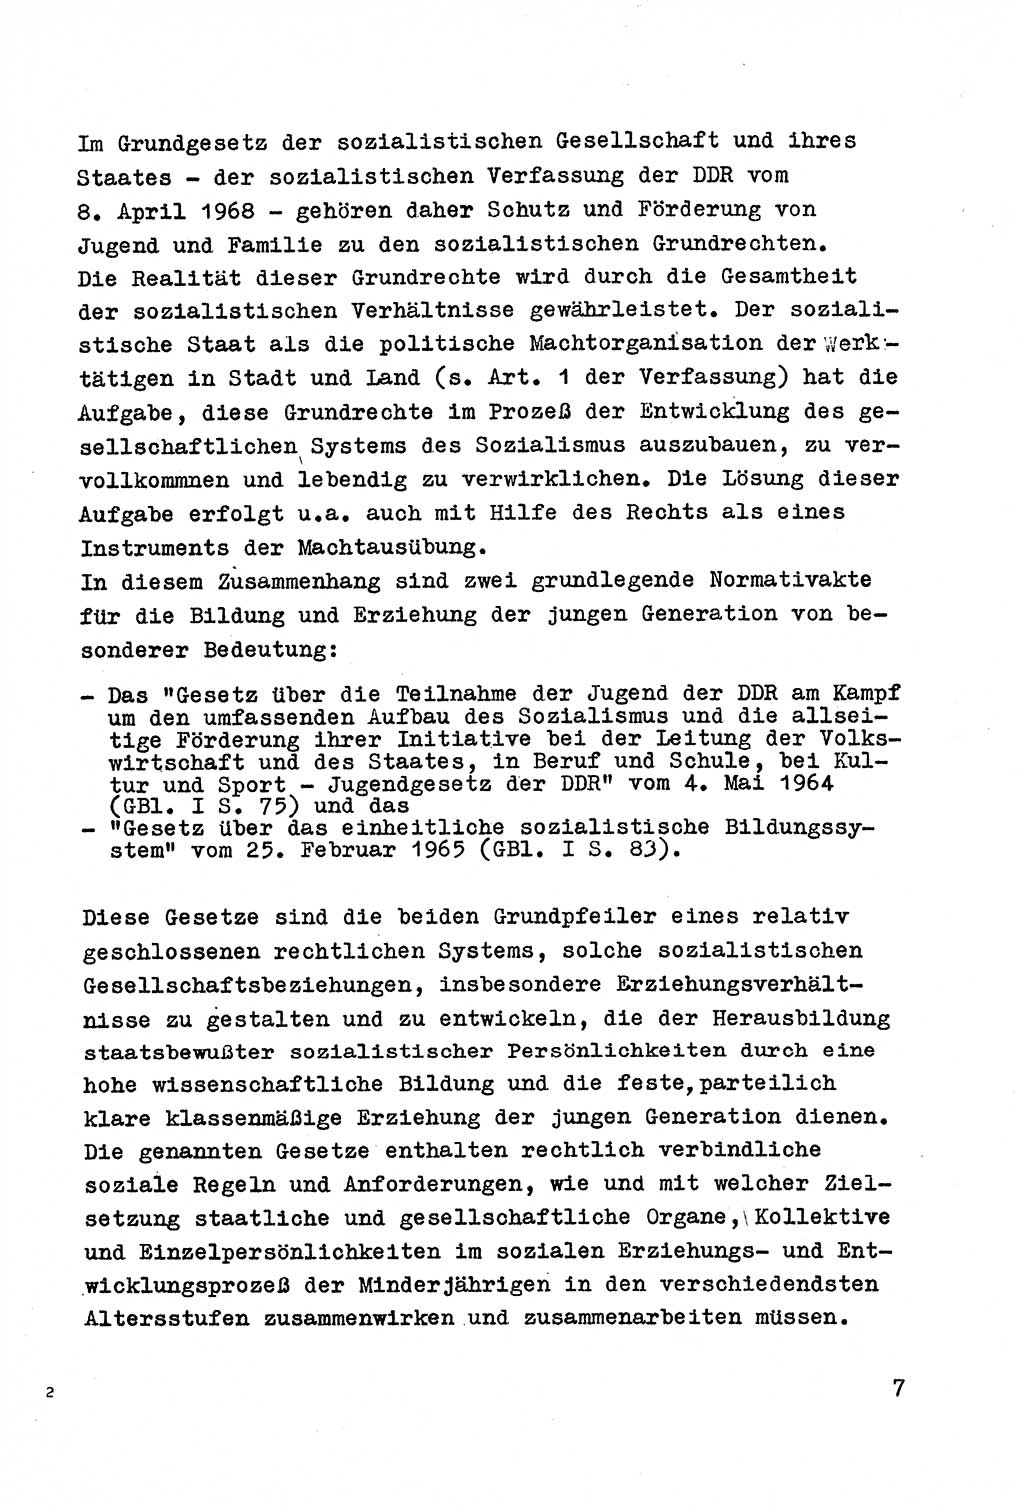 Strafrecht der DDR (Deutsche Demokratische Republik), Besonderer Teil, Lehrmaterial, Heft 4 1969, Seite 7 (Strafr. DDR BT Lehrmat. H. 4 1969, S. 7)